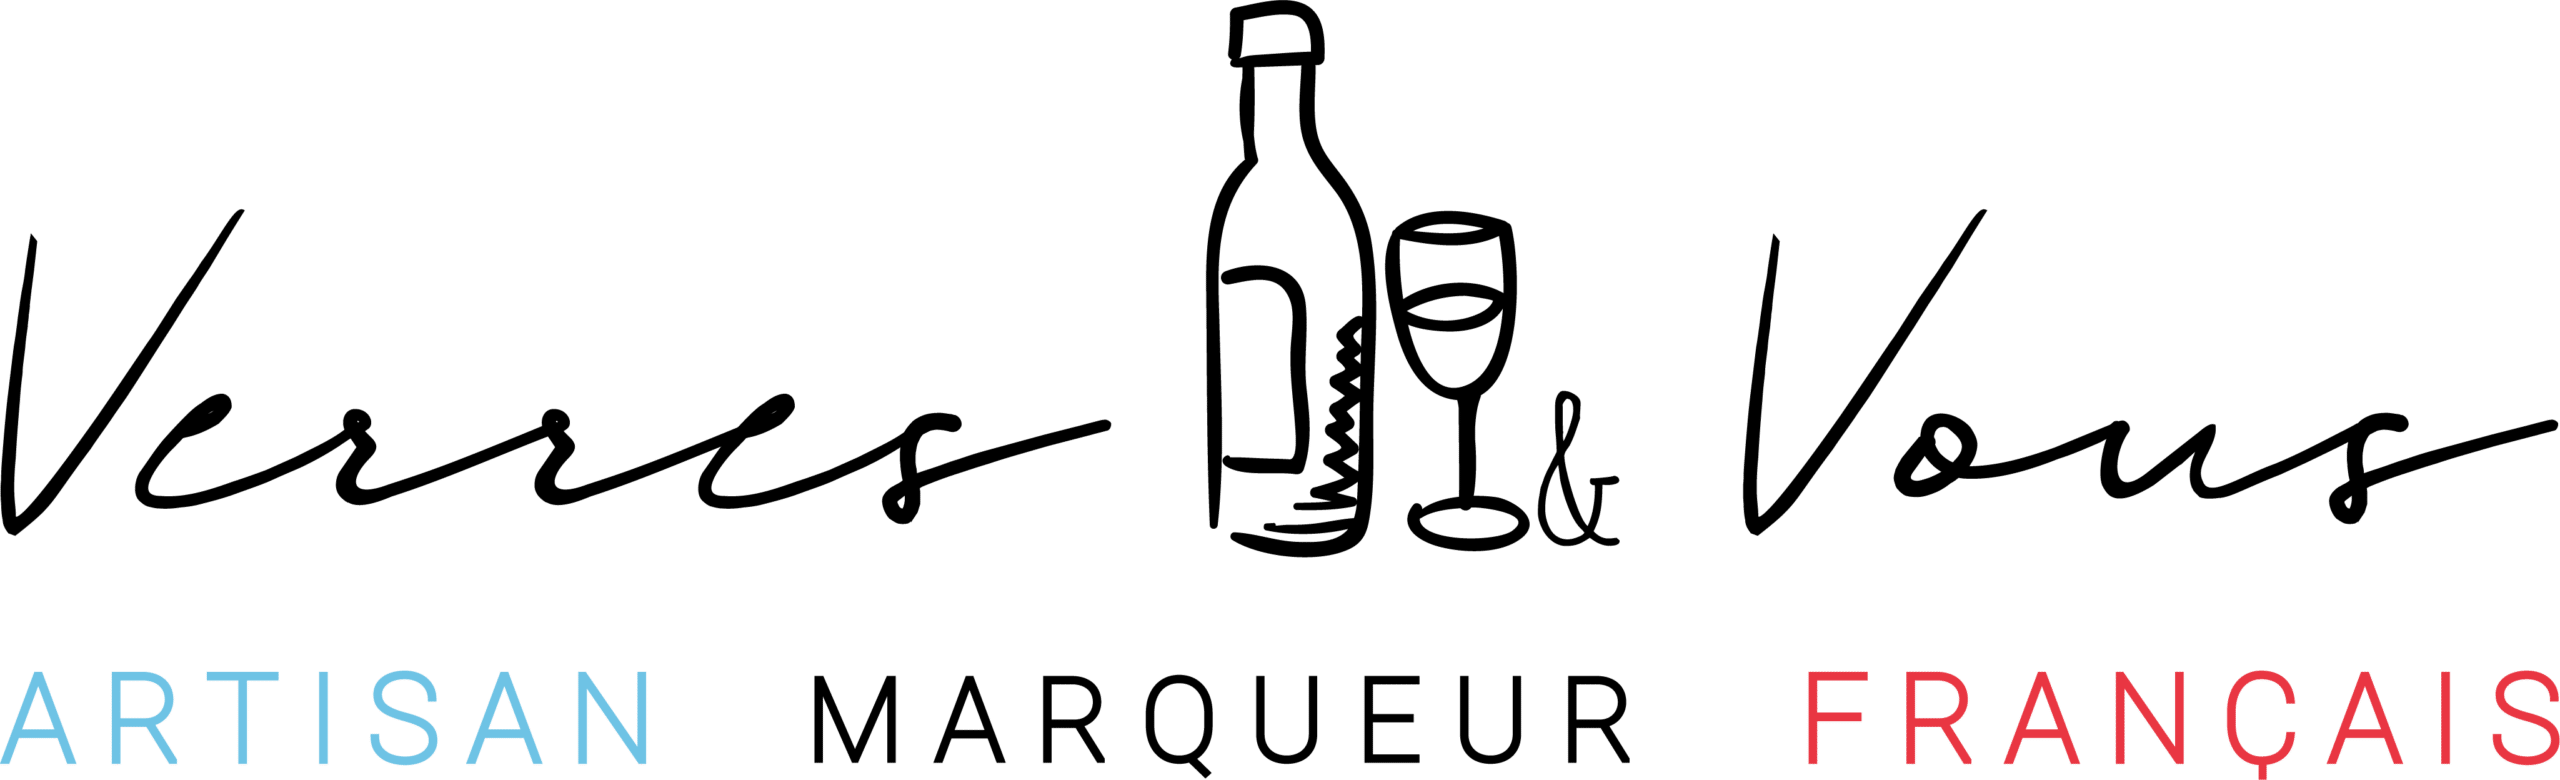 verres personnalisés Verres & Vous artisan marqueur français verre gravé mariage baptême anniversaire